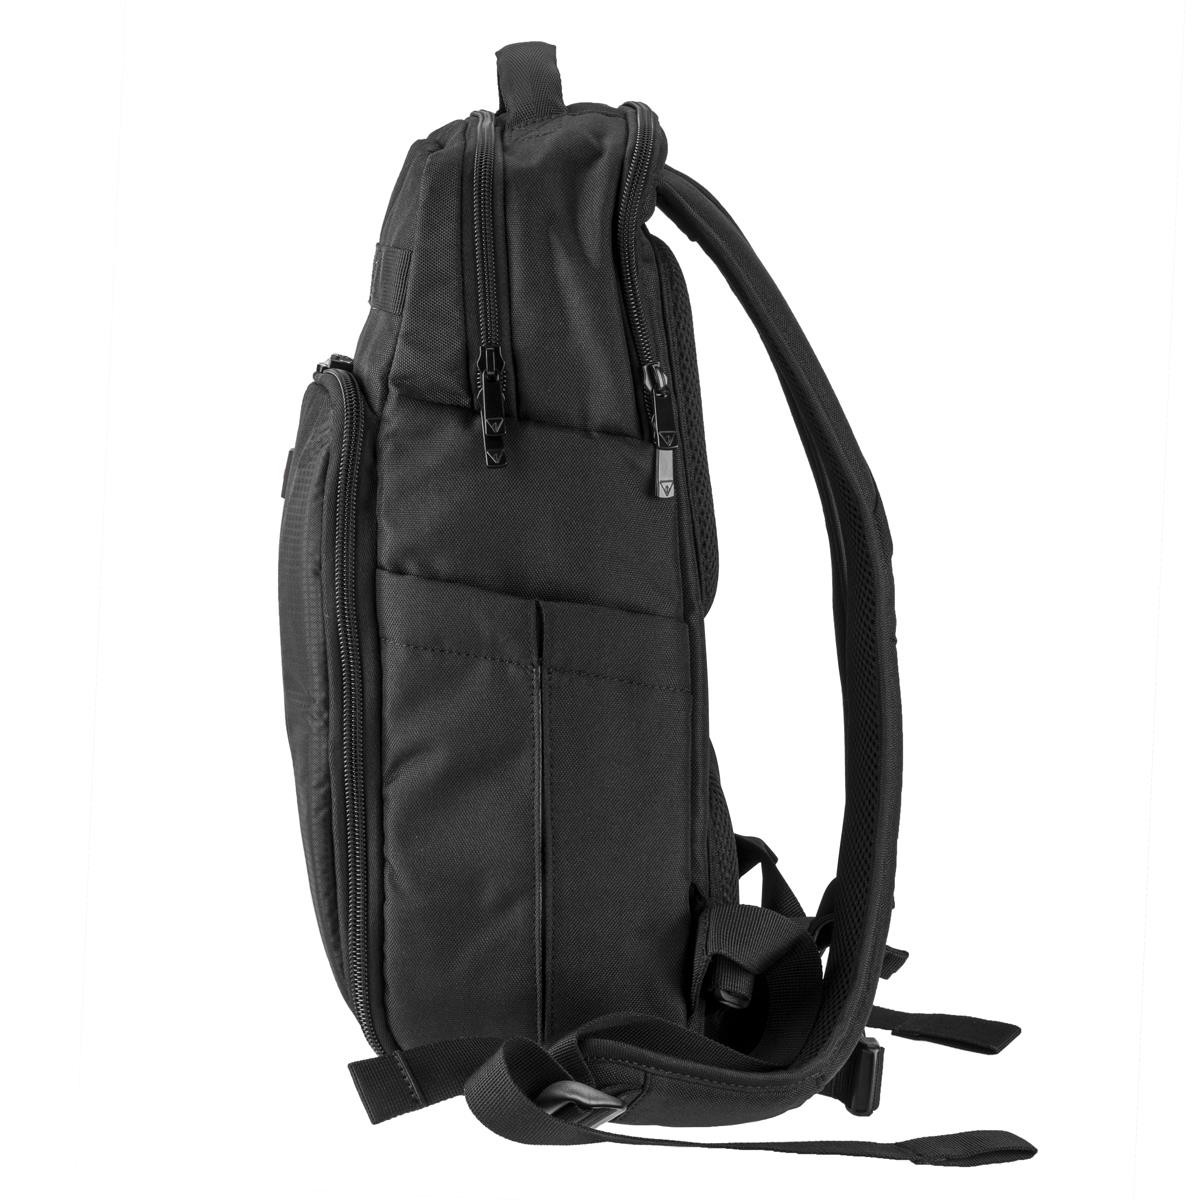 Slinger Alpine 190 Lightweight Backpack for Camera, Laptop or Drone ...